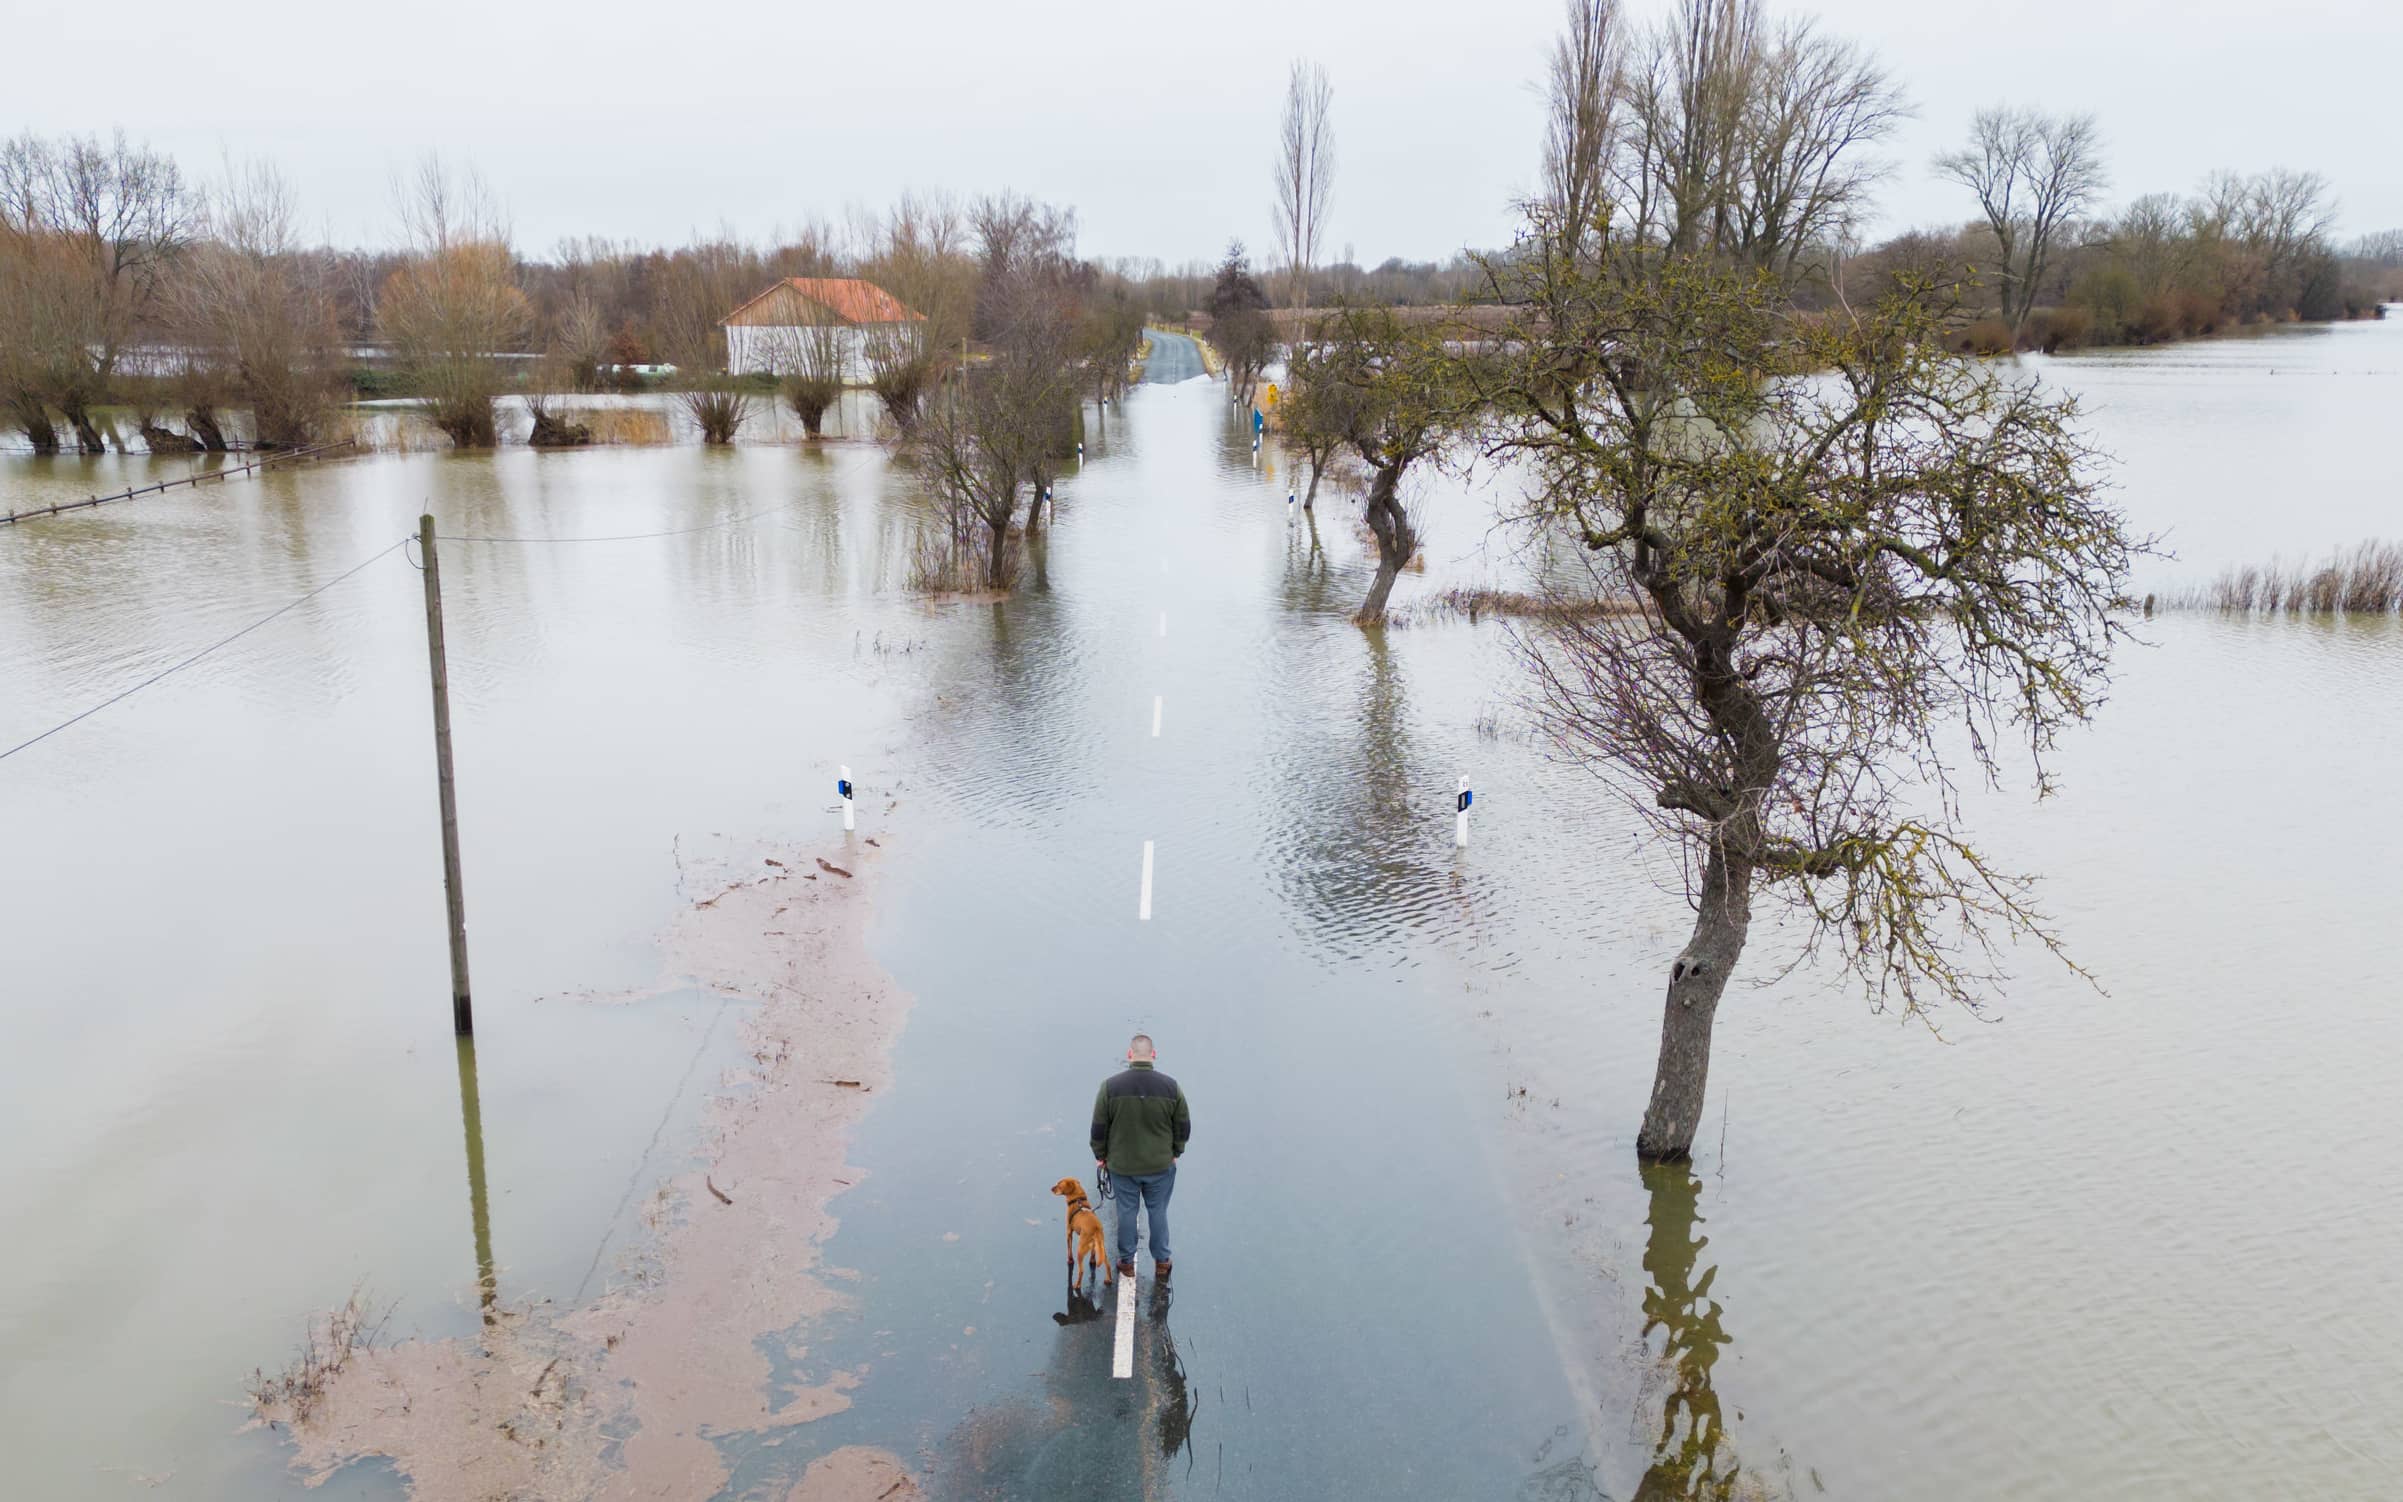 Hund an der Leine in der Leine: Südlich von Hannover zwischen den Ortschaften Harkenbleck und Wilkenburg hat der Fluss die Landstraße überflutet.